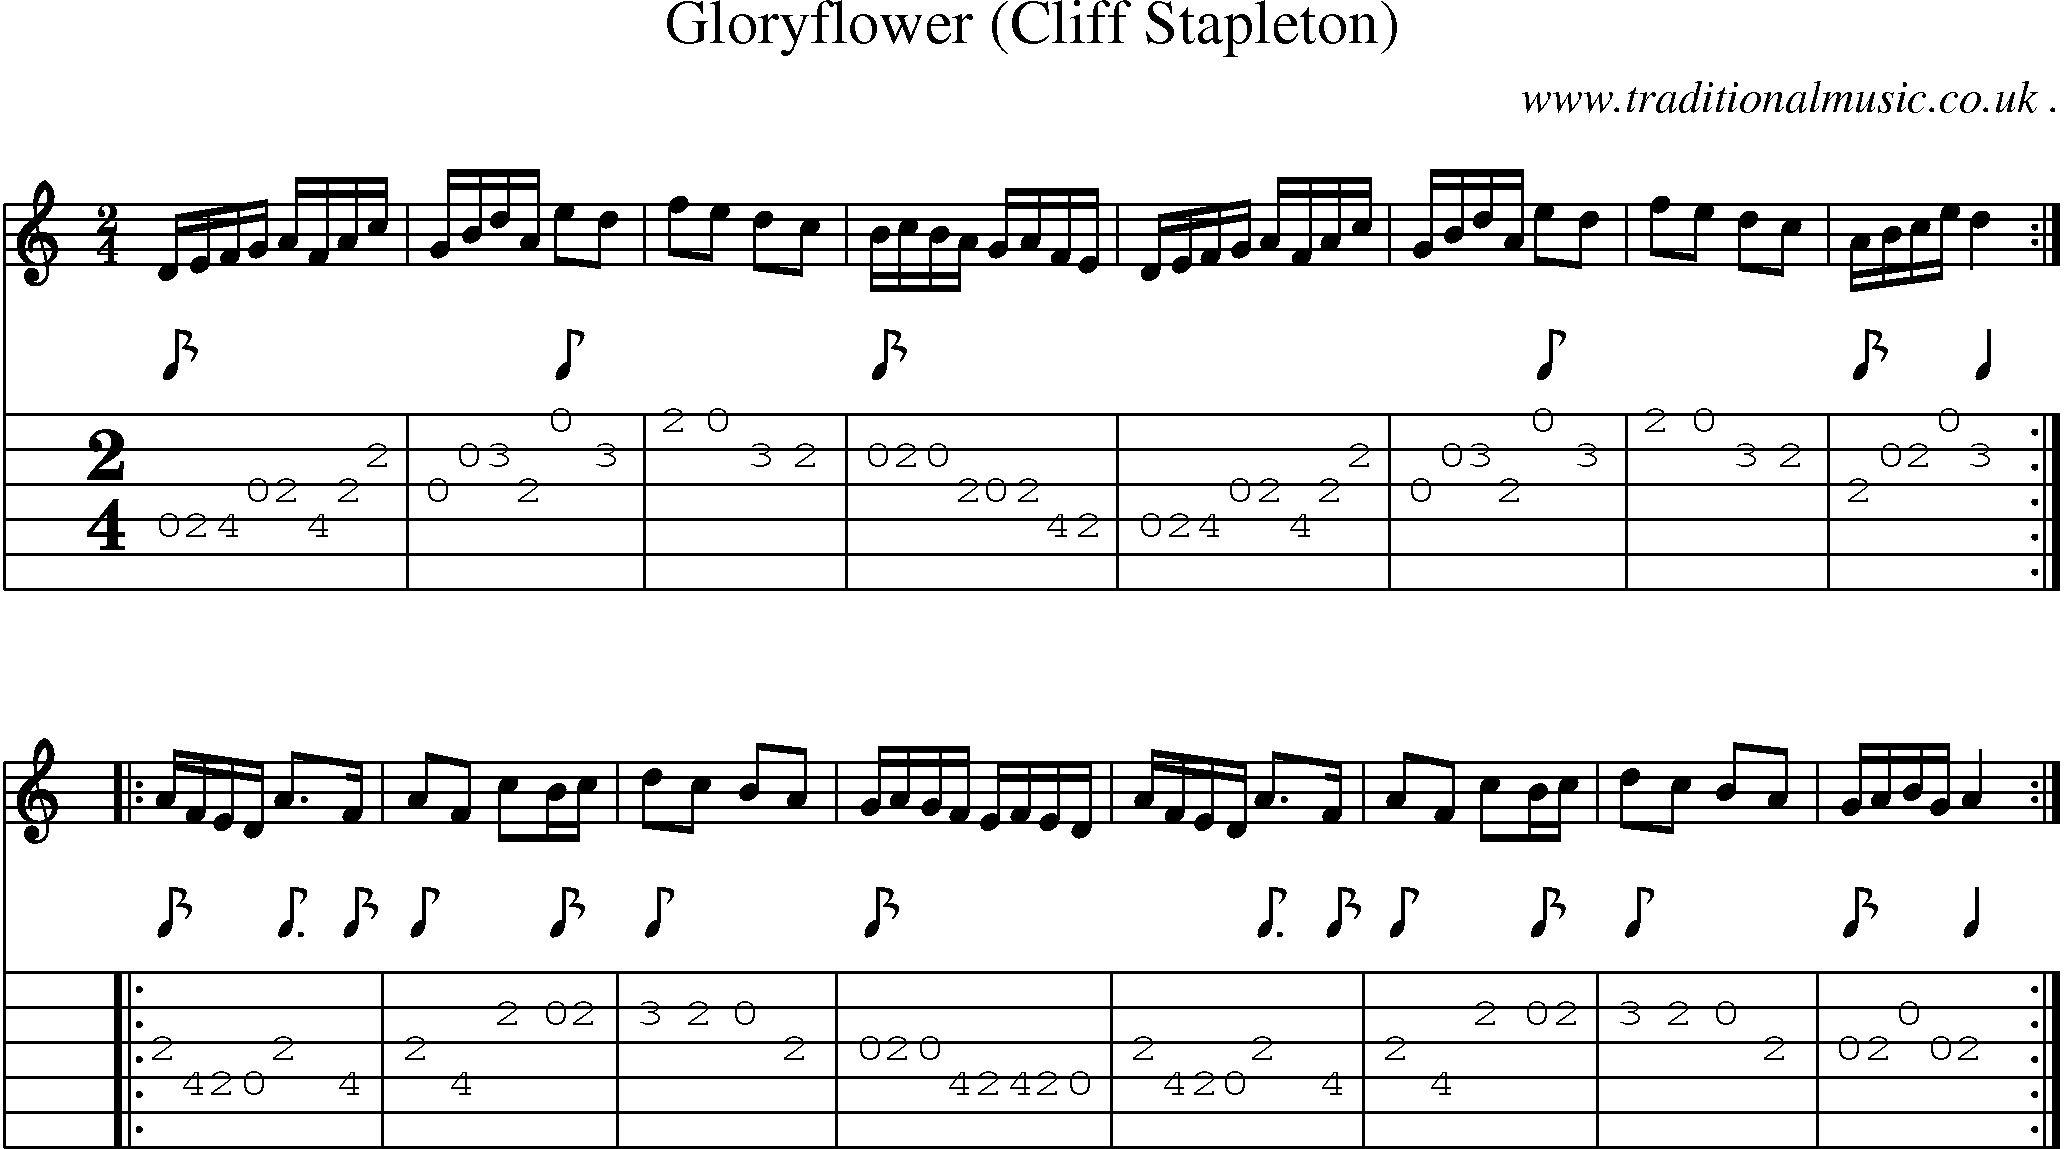 Sheet-Music and Guitar Tabs for Gloryflower (cliff Stapleton)